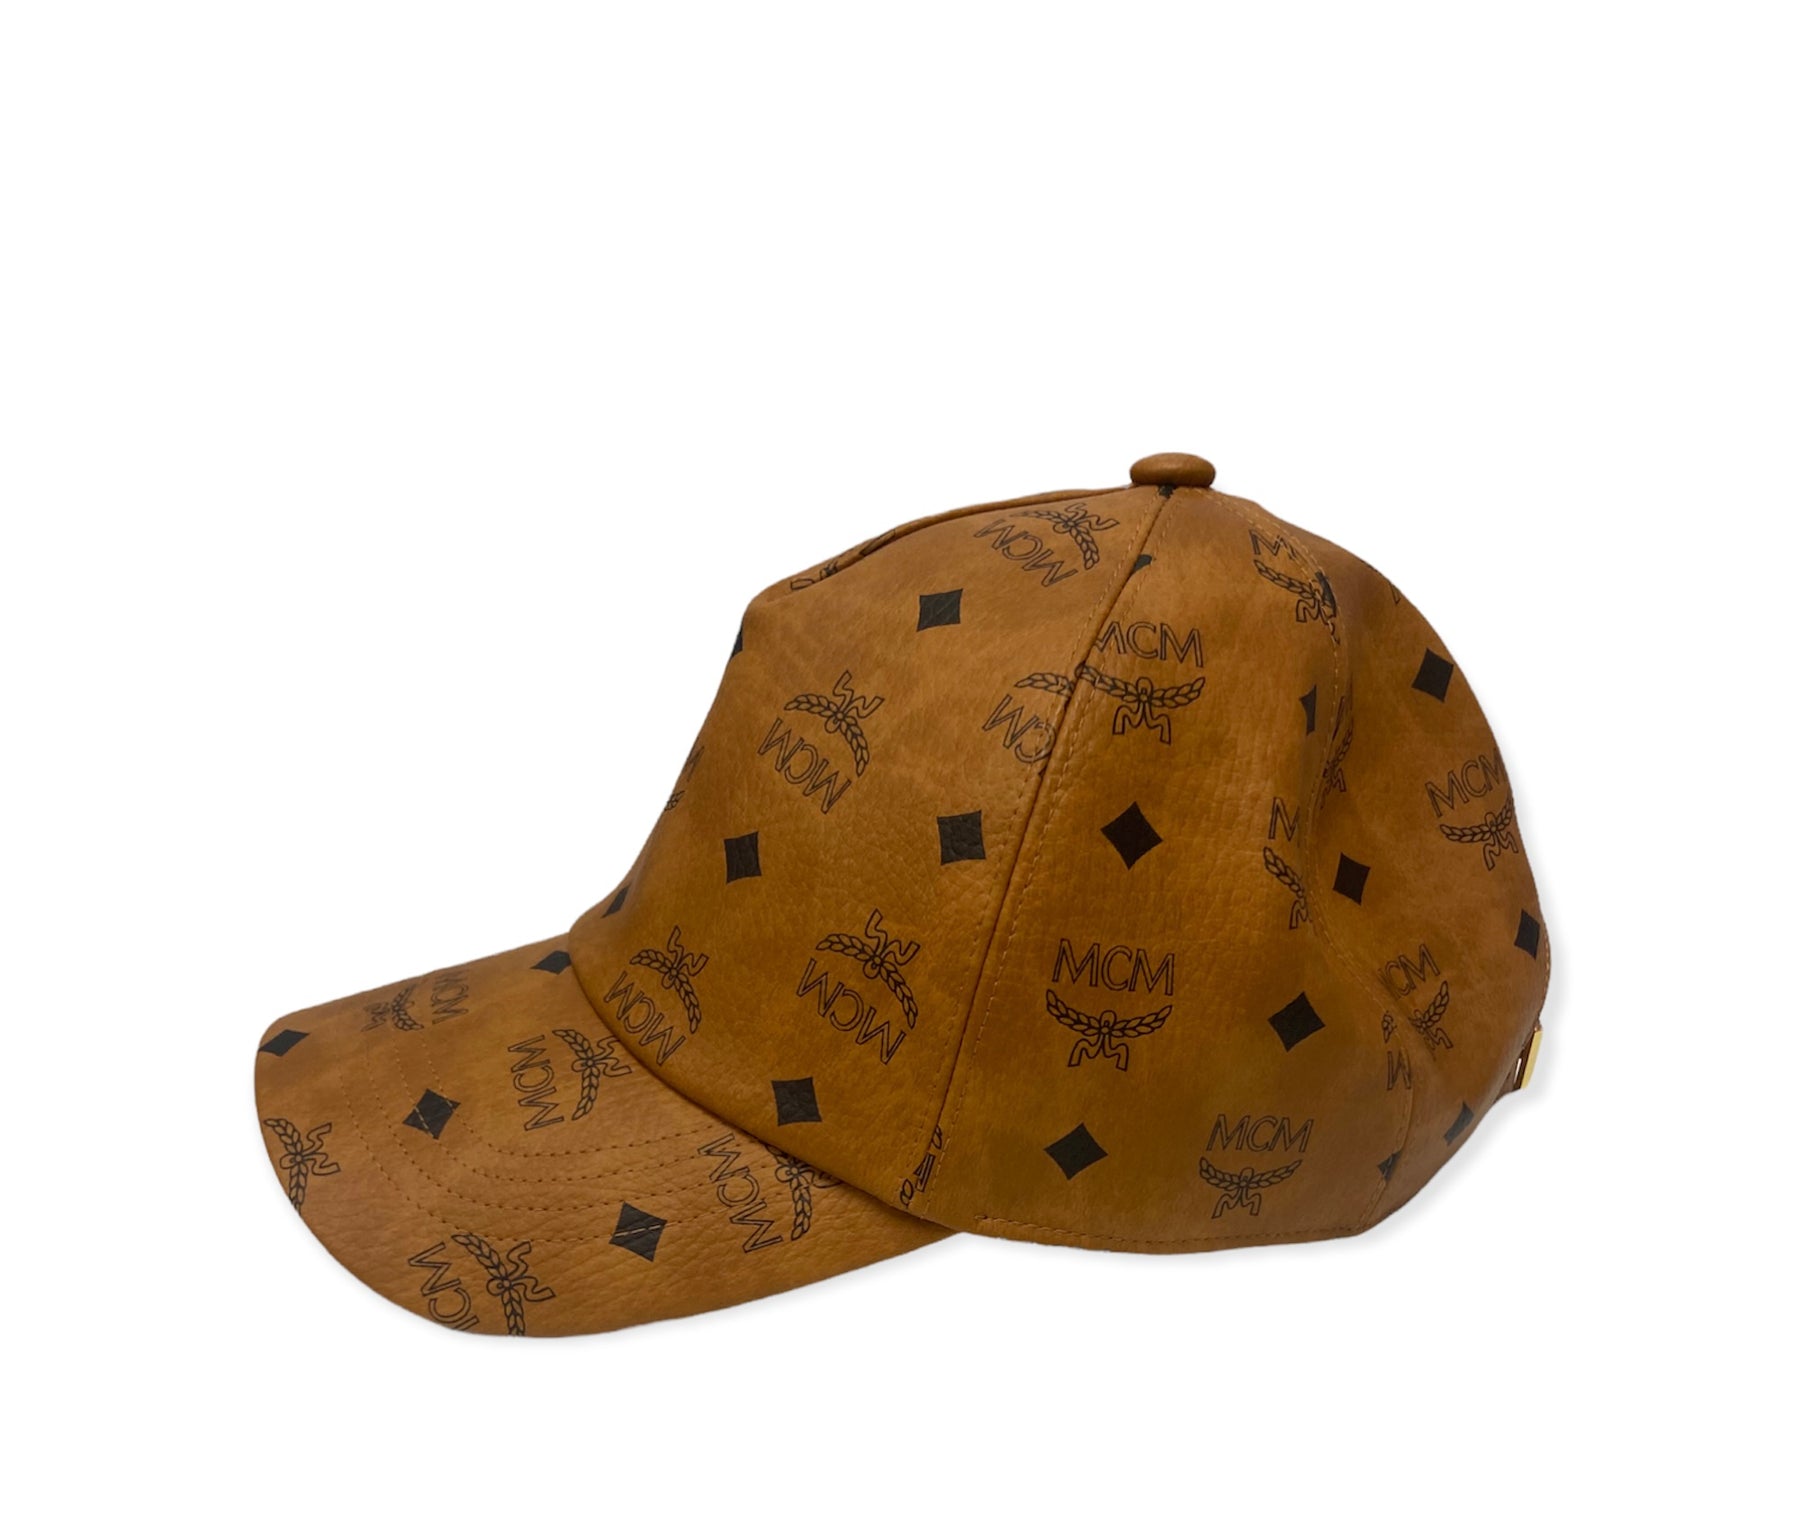 Mcm Mini Visetos Hat Box Bag - Brown